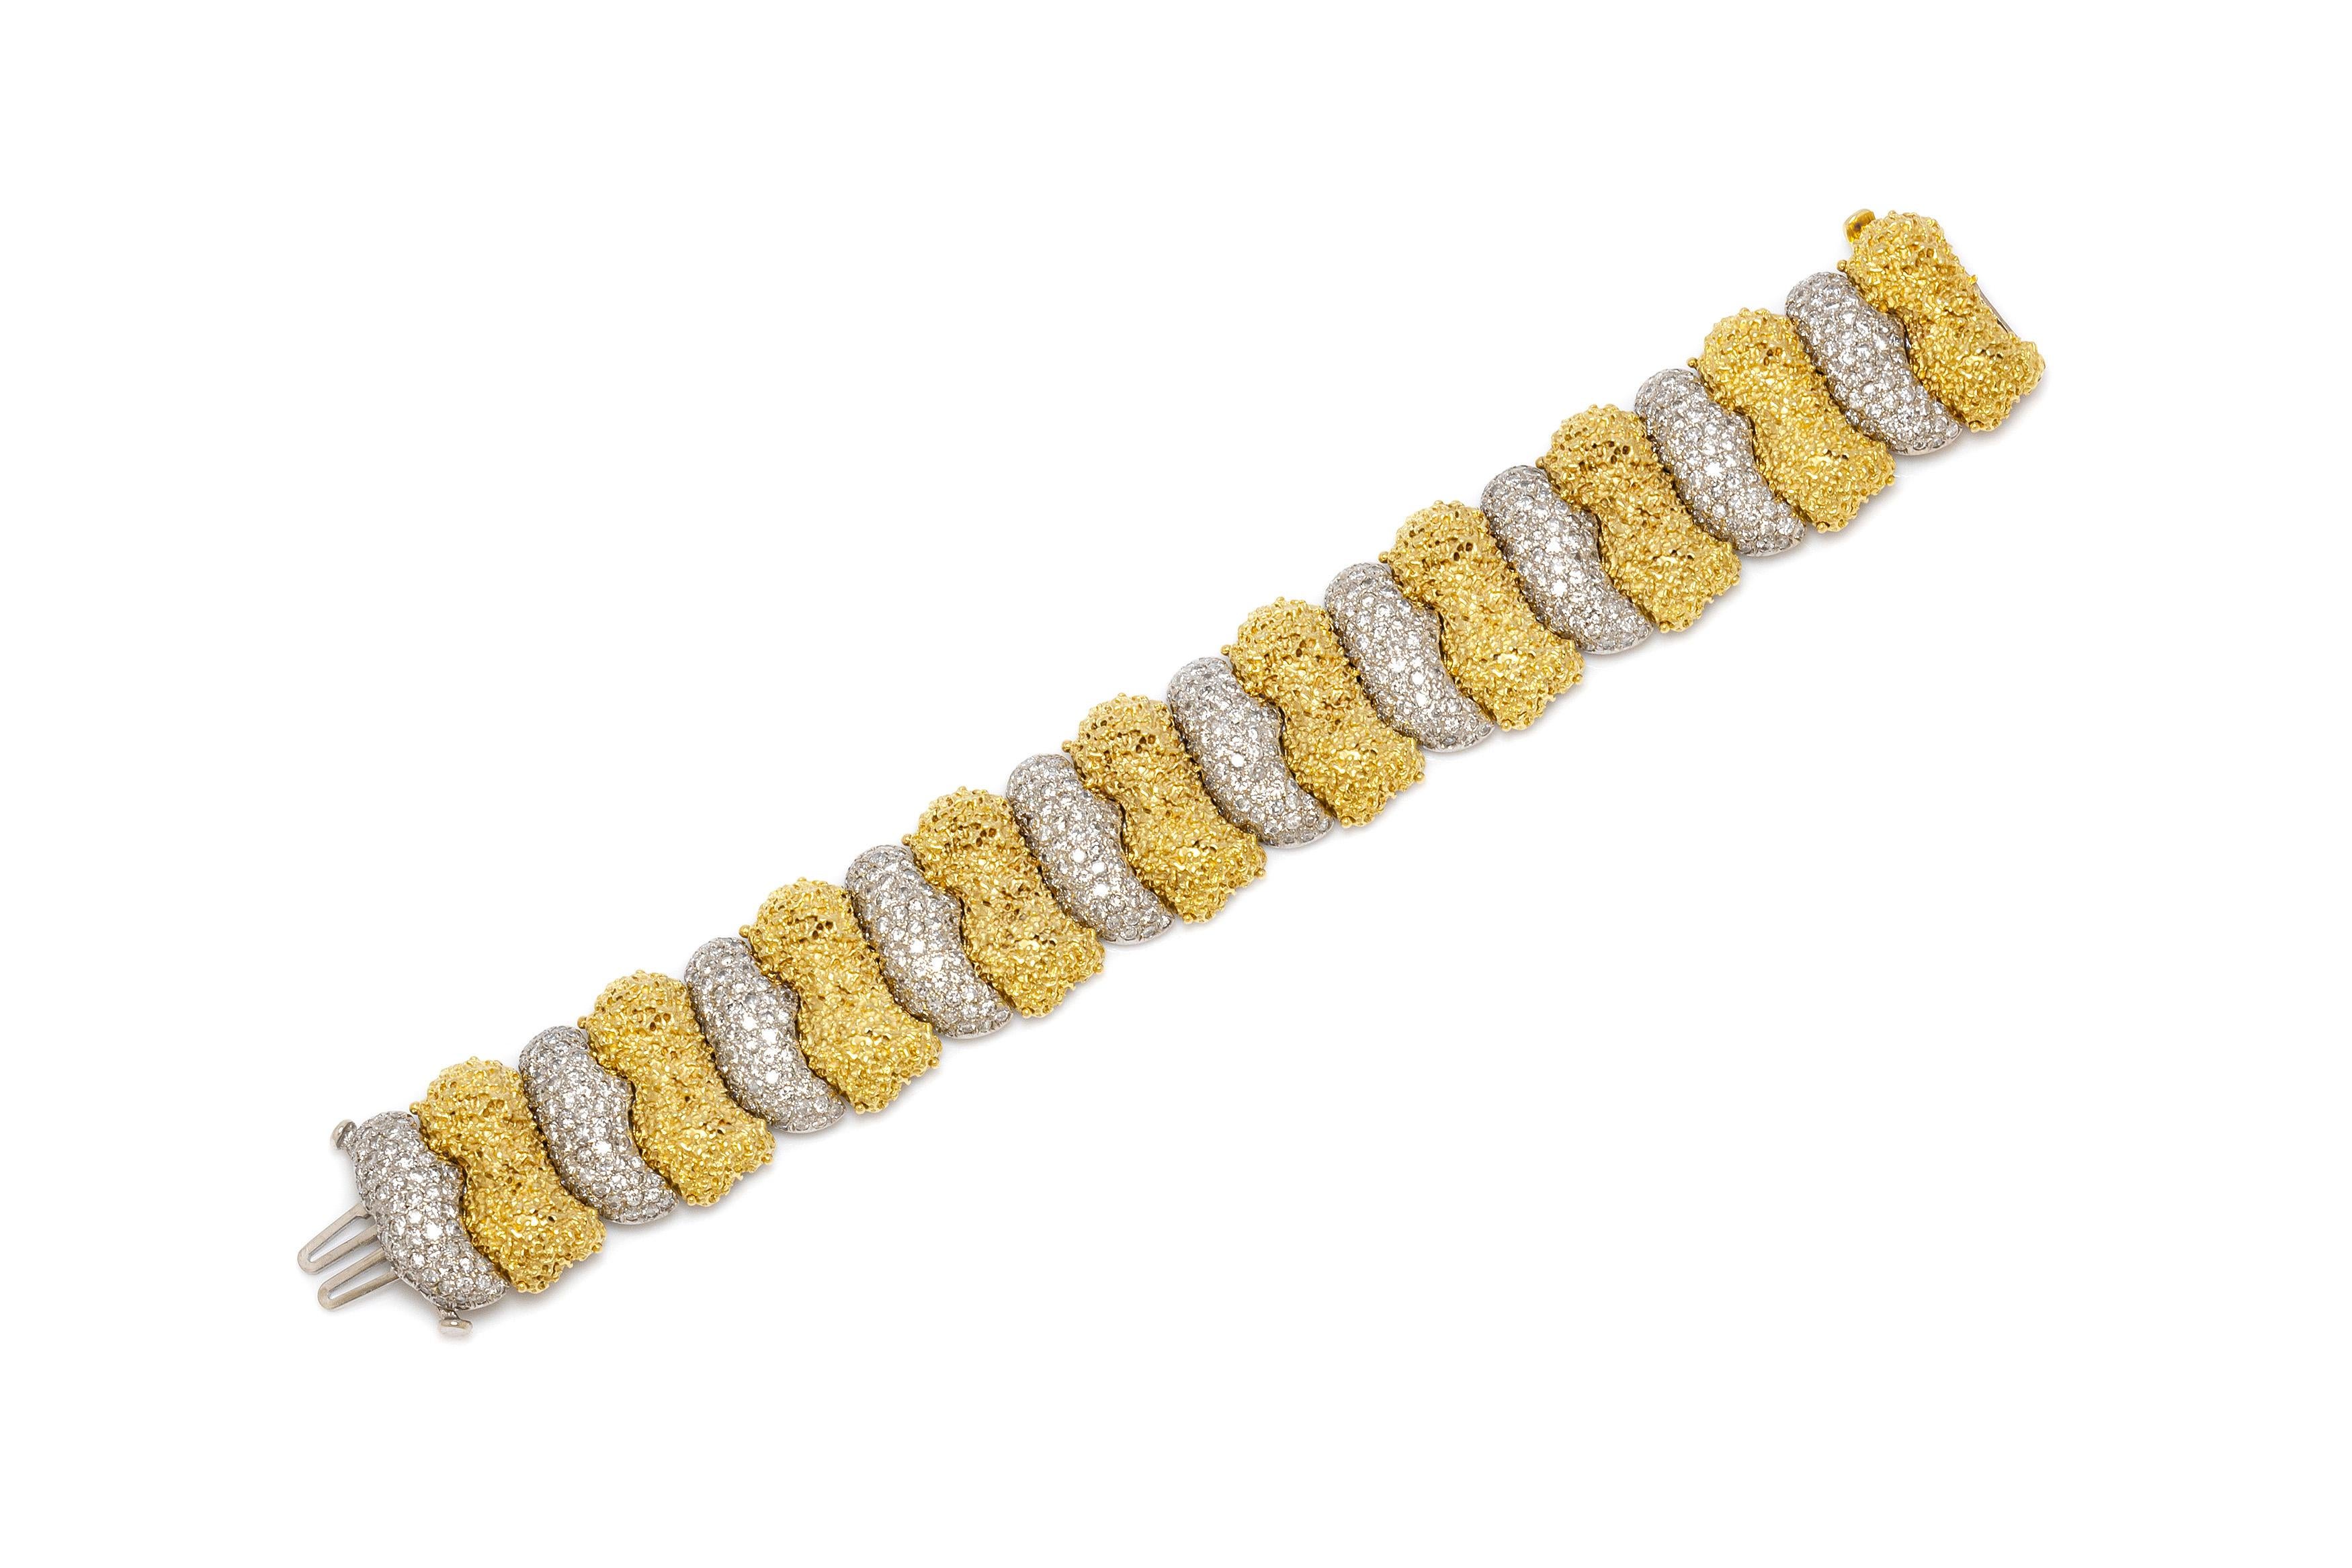 Bracelet finement travaillé en or jaune et blanc 18k avec des diamants pesant au total 15,00 carats. La longueur du bracelet est de 7,5 pouces / 19 cm. Vers les années 70.